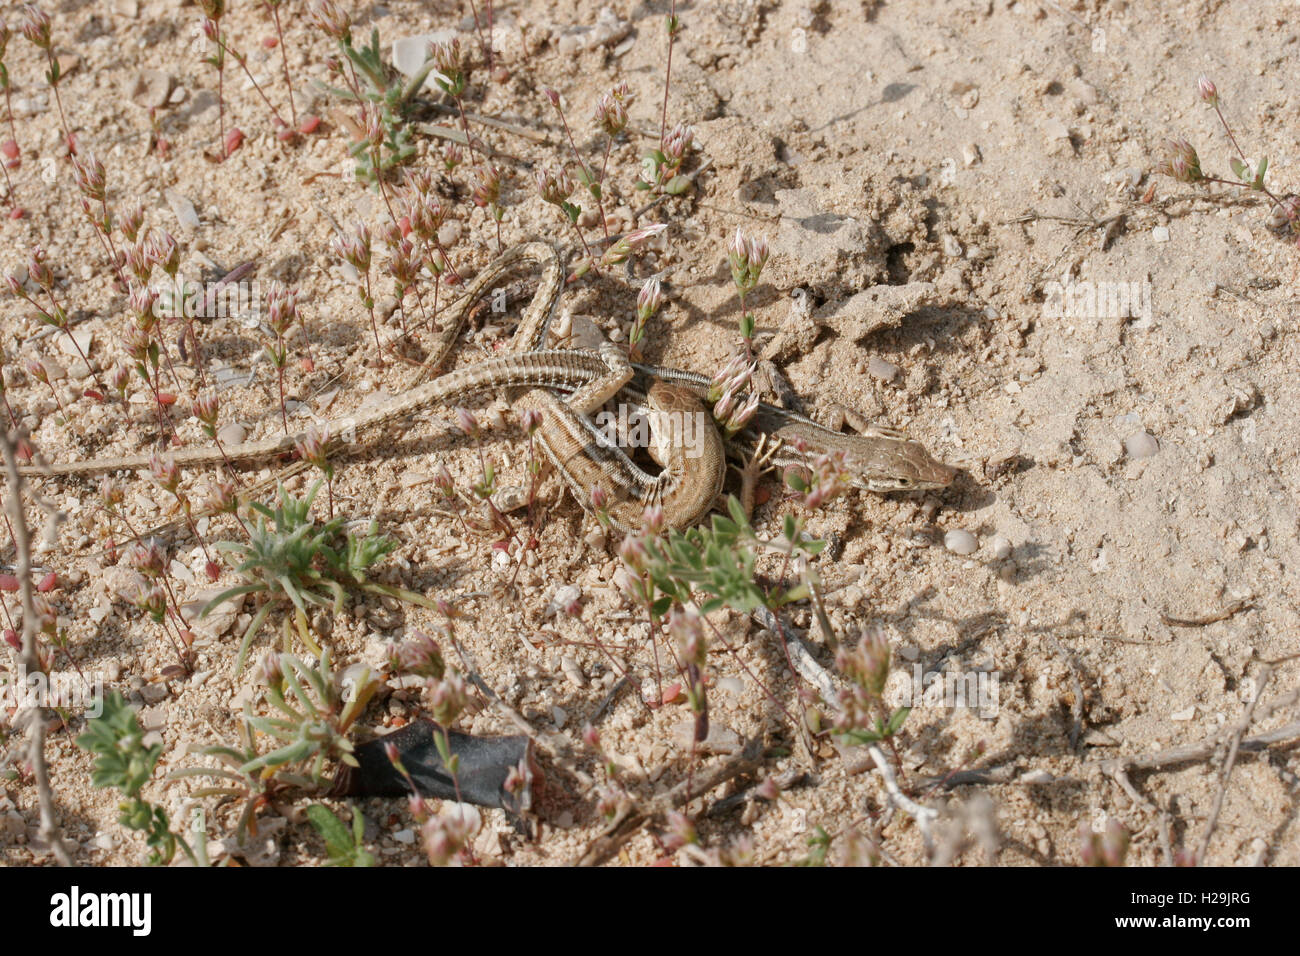 Hadramaut sand lizards Mesalina adramitana mating, UAE Stock Photo